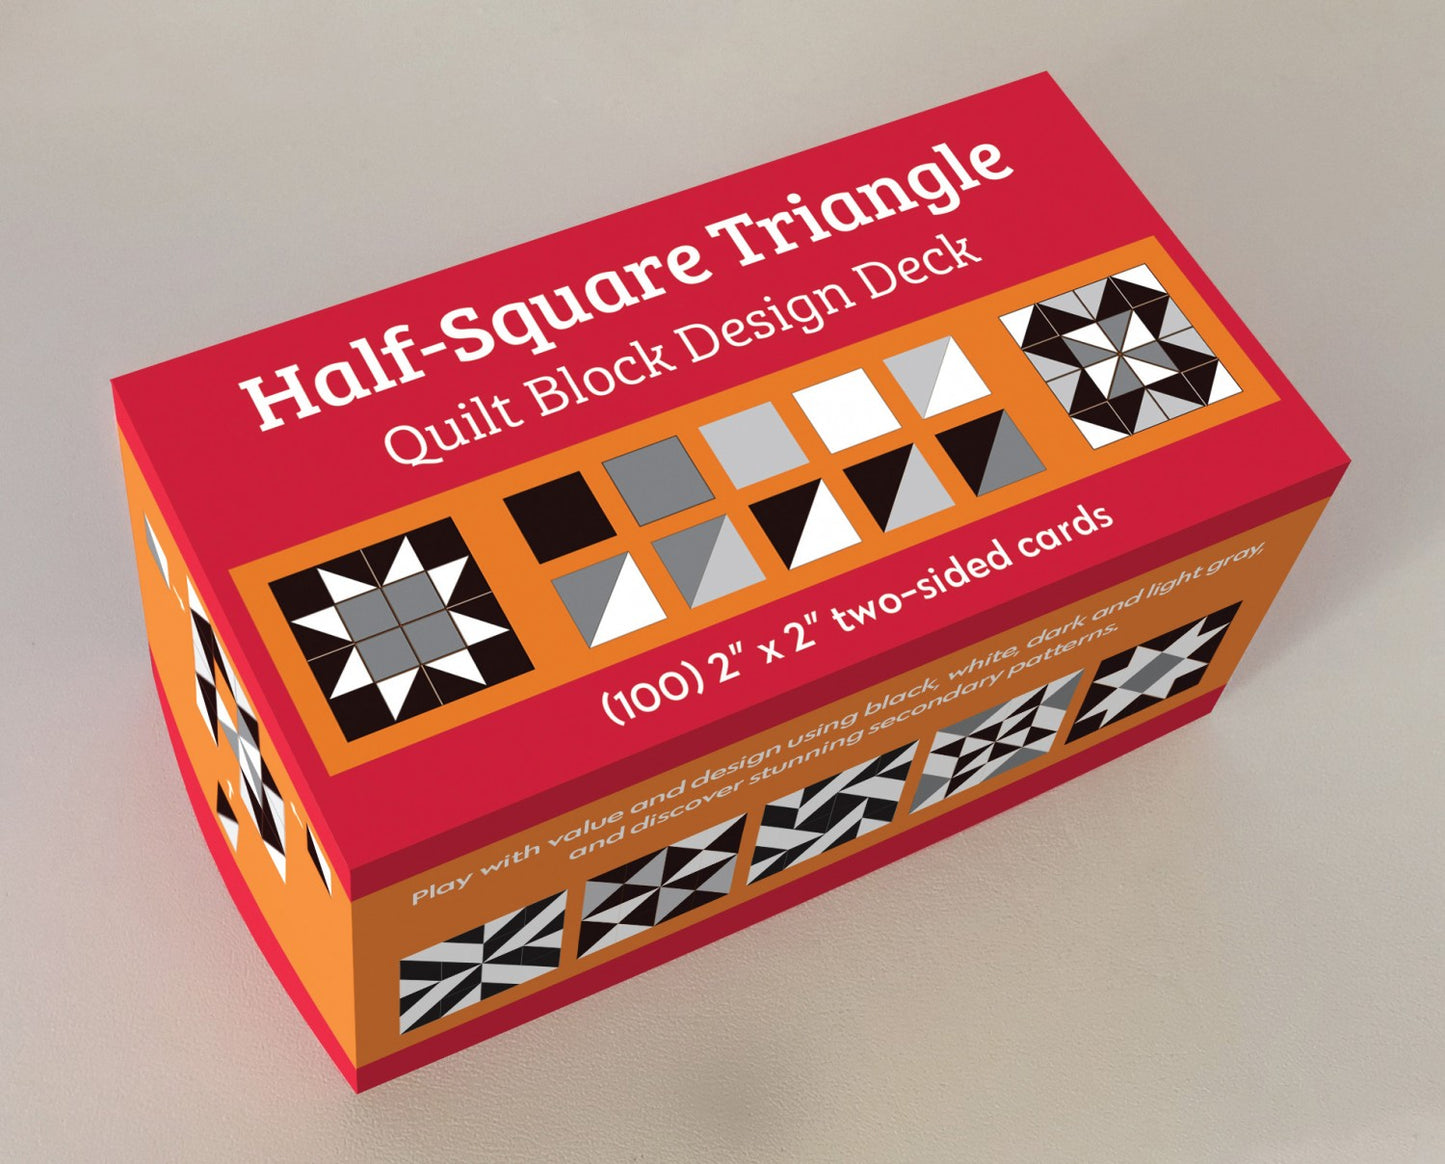 Quilt Block Design Deck - Half-Square Triangles